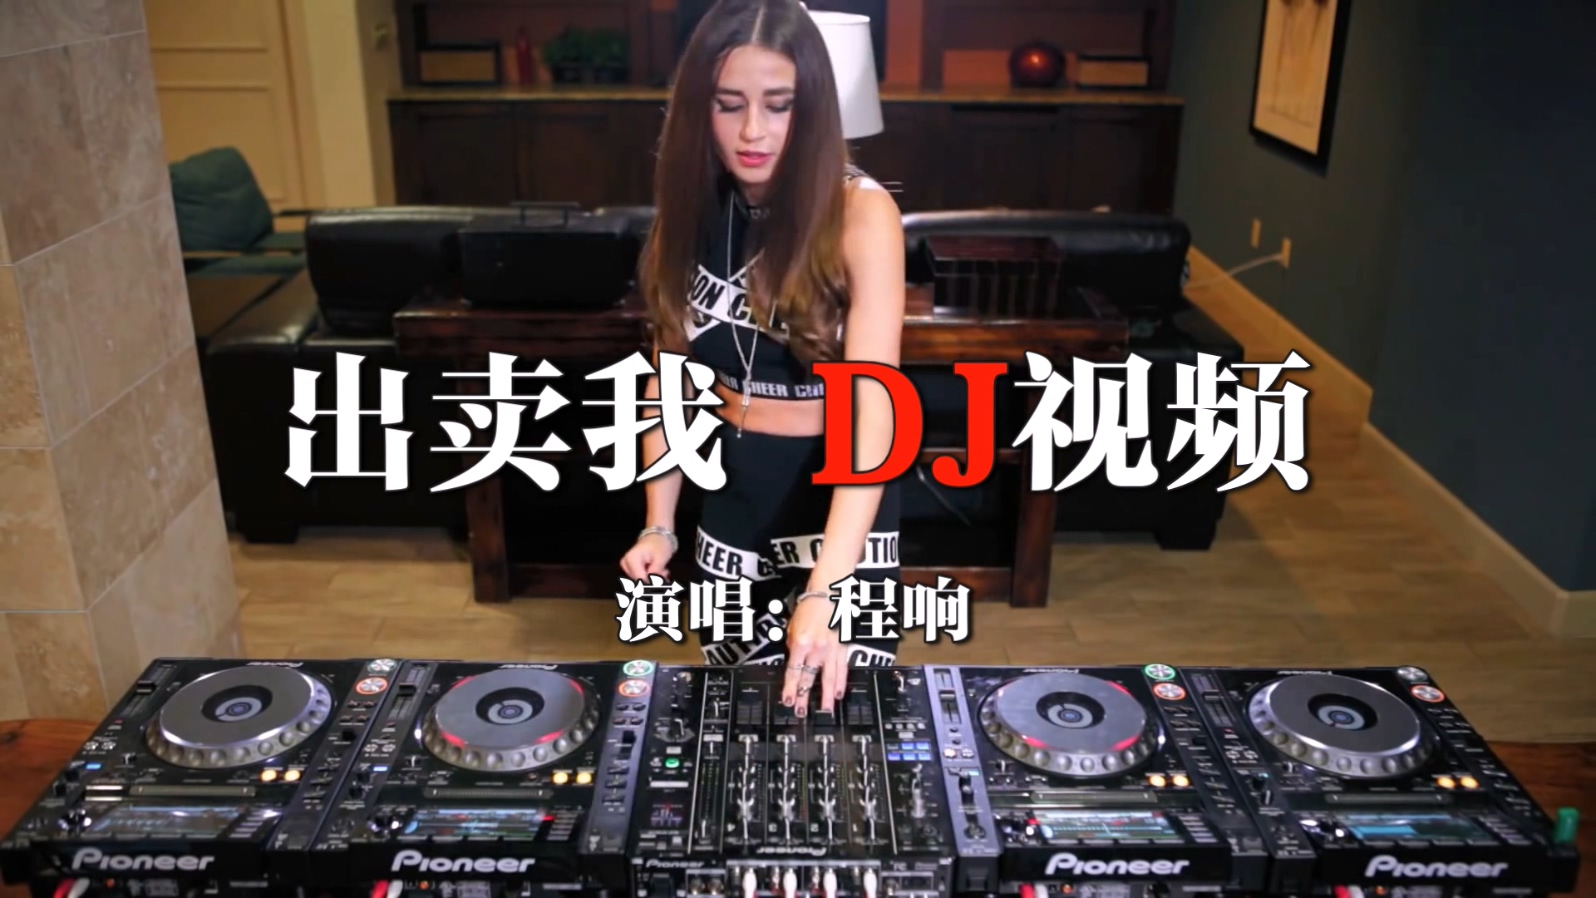 美女DJ打碟DJ视频中文舞曲 - 程响